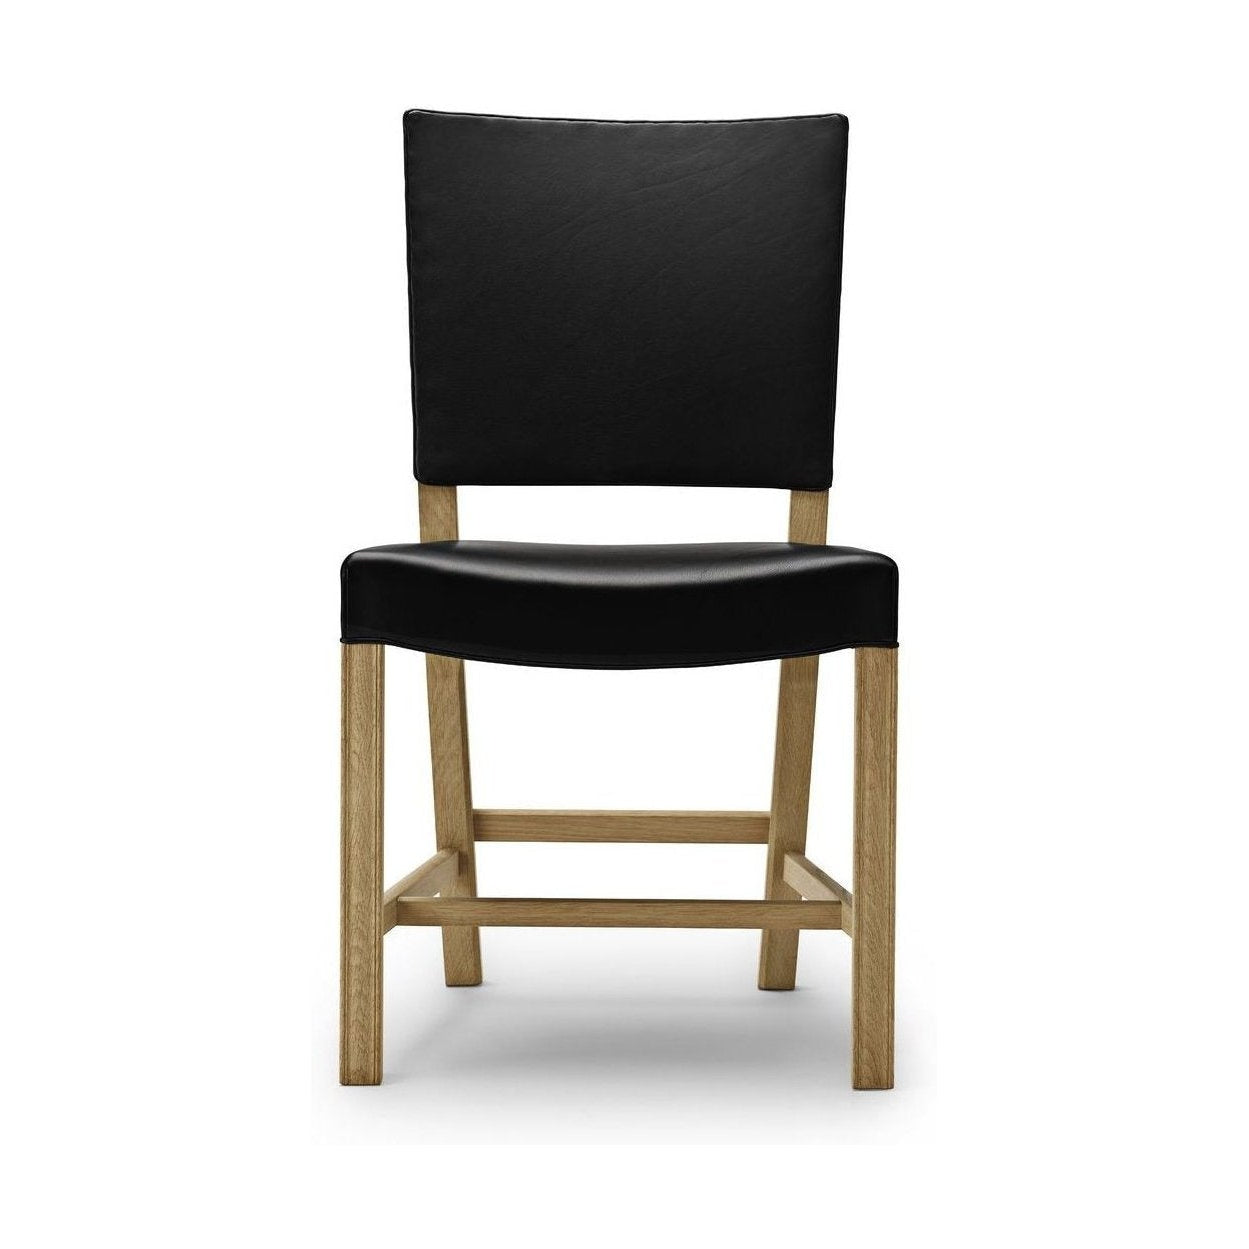 Carl Hansen KK39490 kleiner roter Stuhl, Eichenseifen/schwarzes Leder